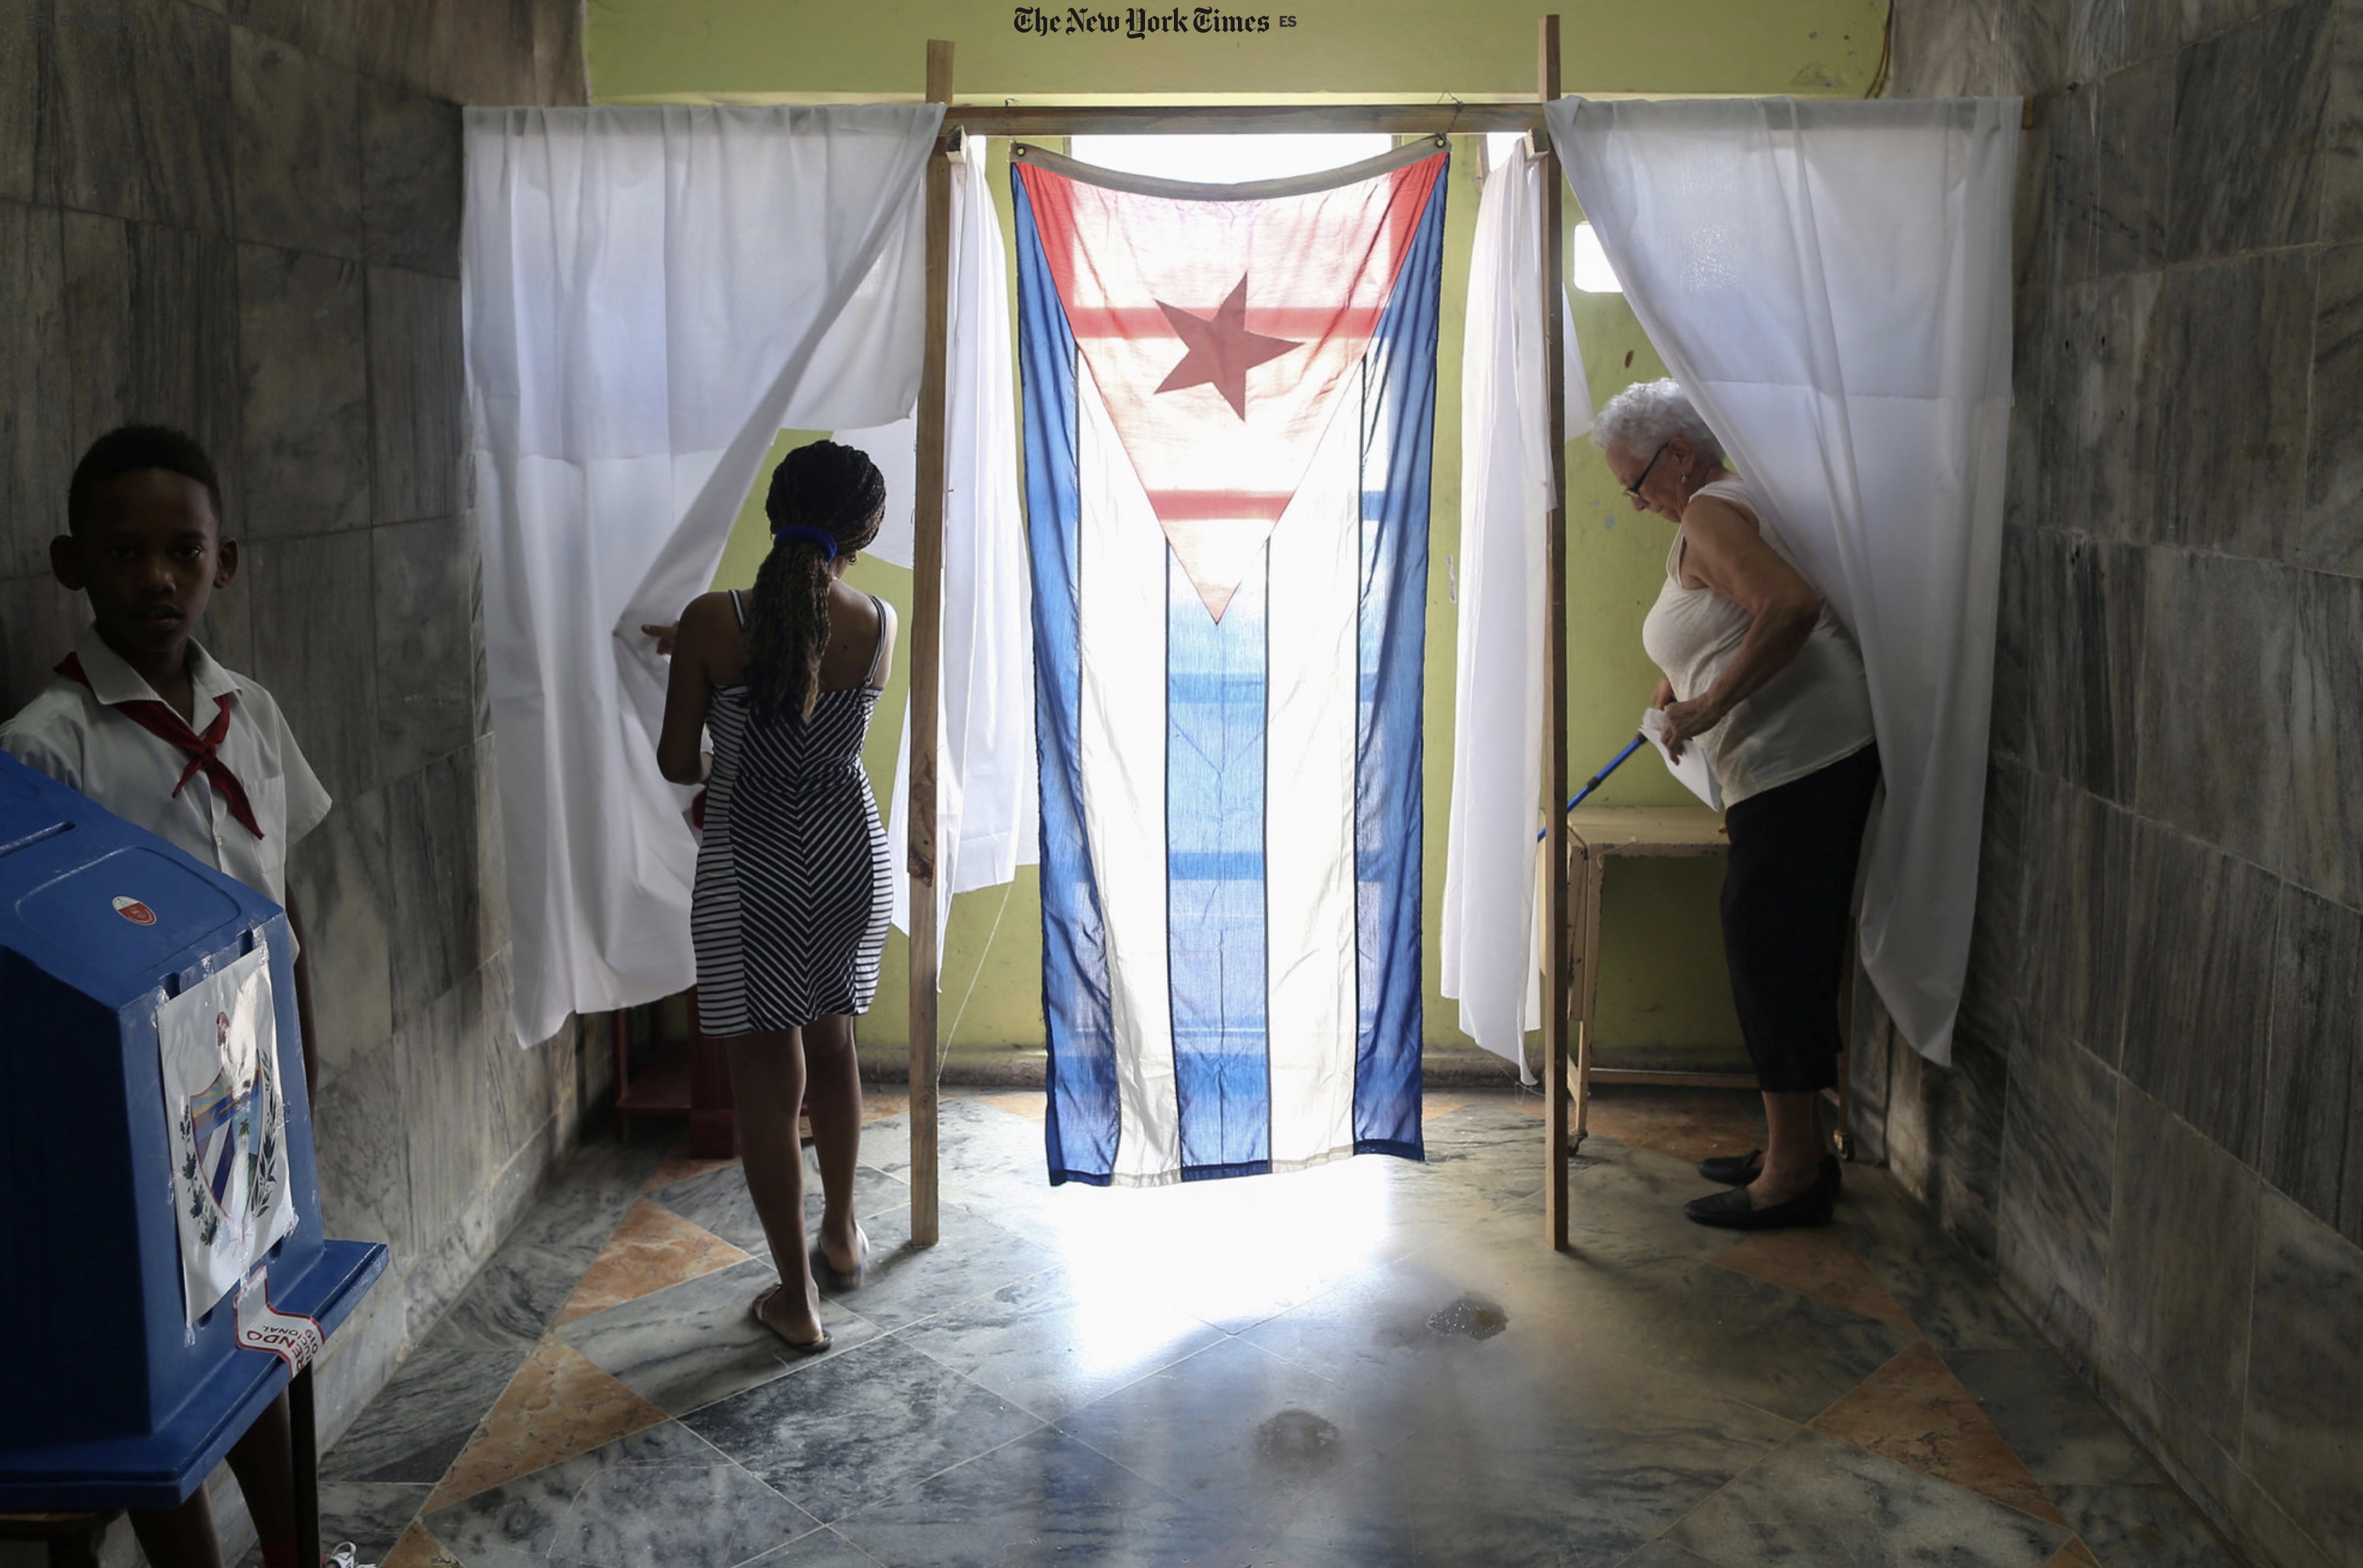 New York Times: El faro caído: la Revolución cubana y la izquierda latinoamericana